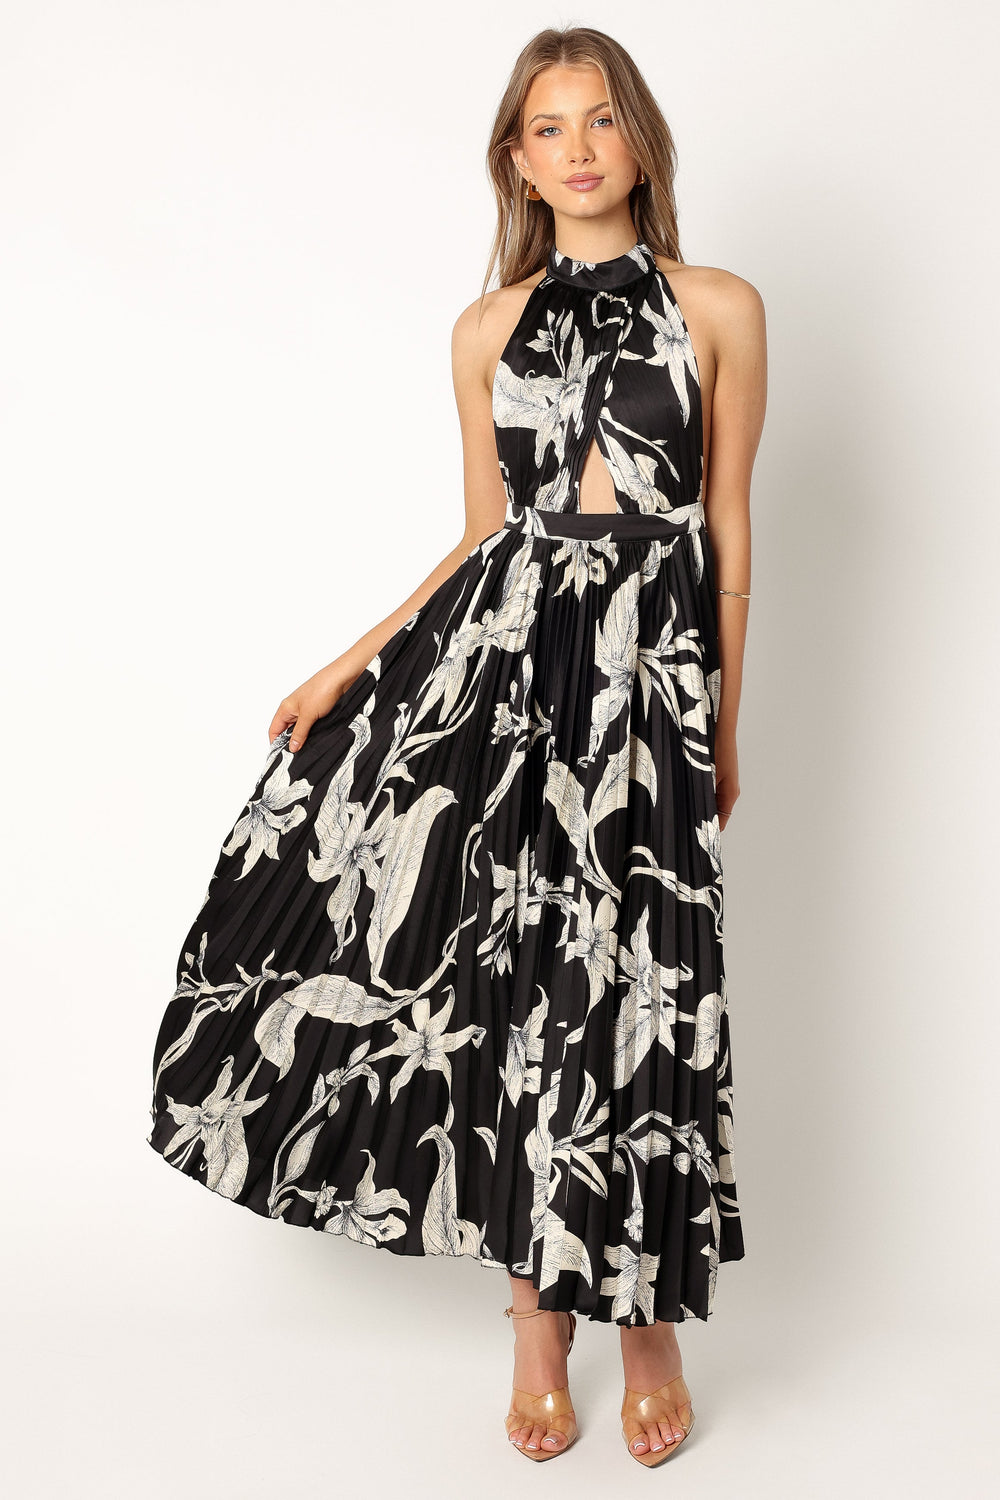 DRESSES @Sabine Halteneck Maxi Dress - Black Floral